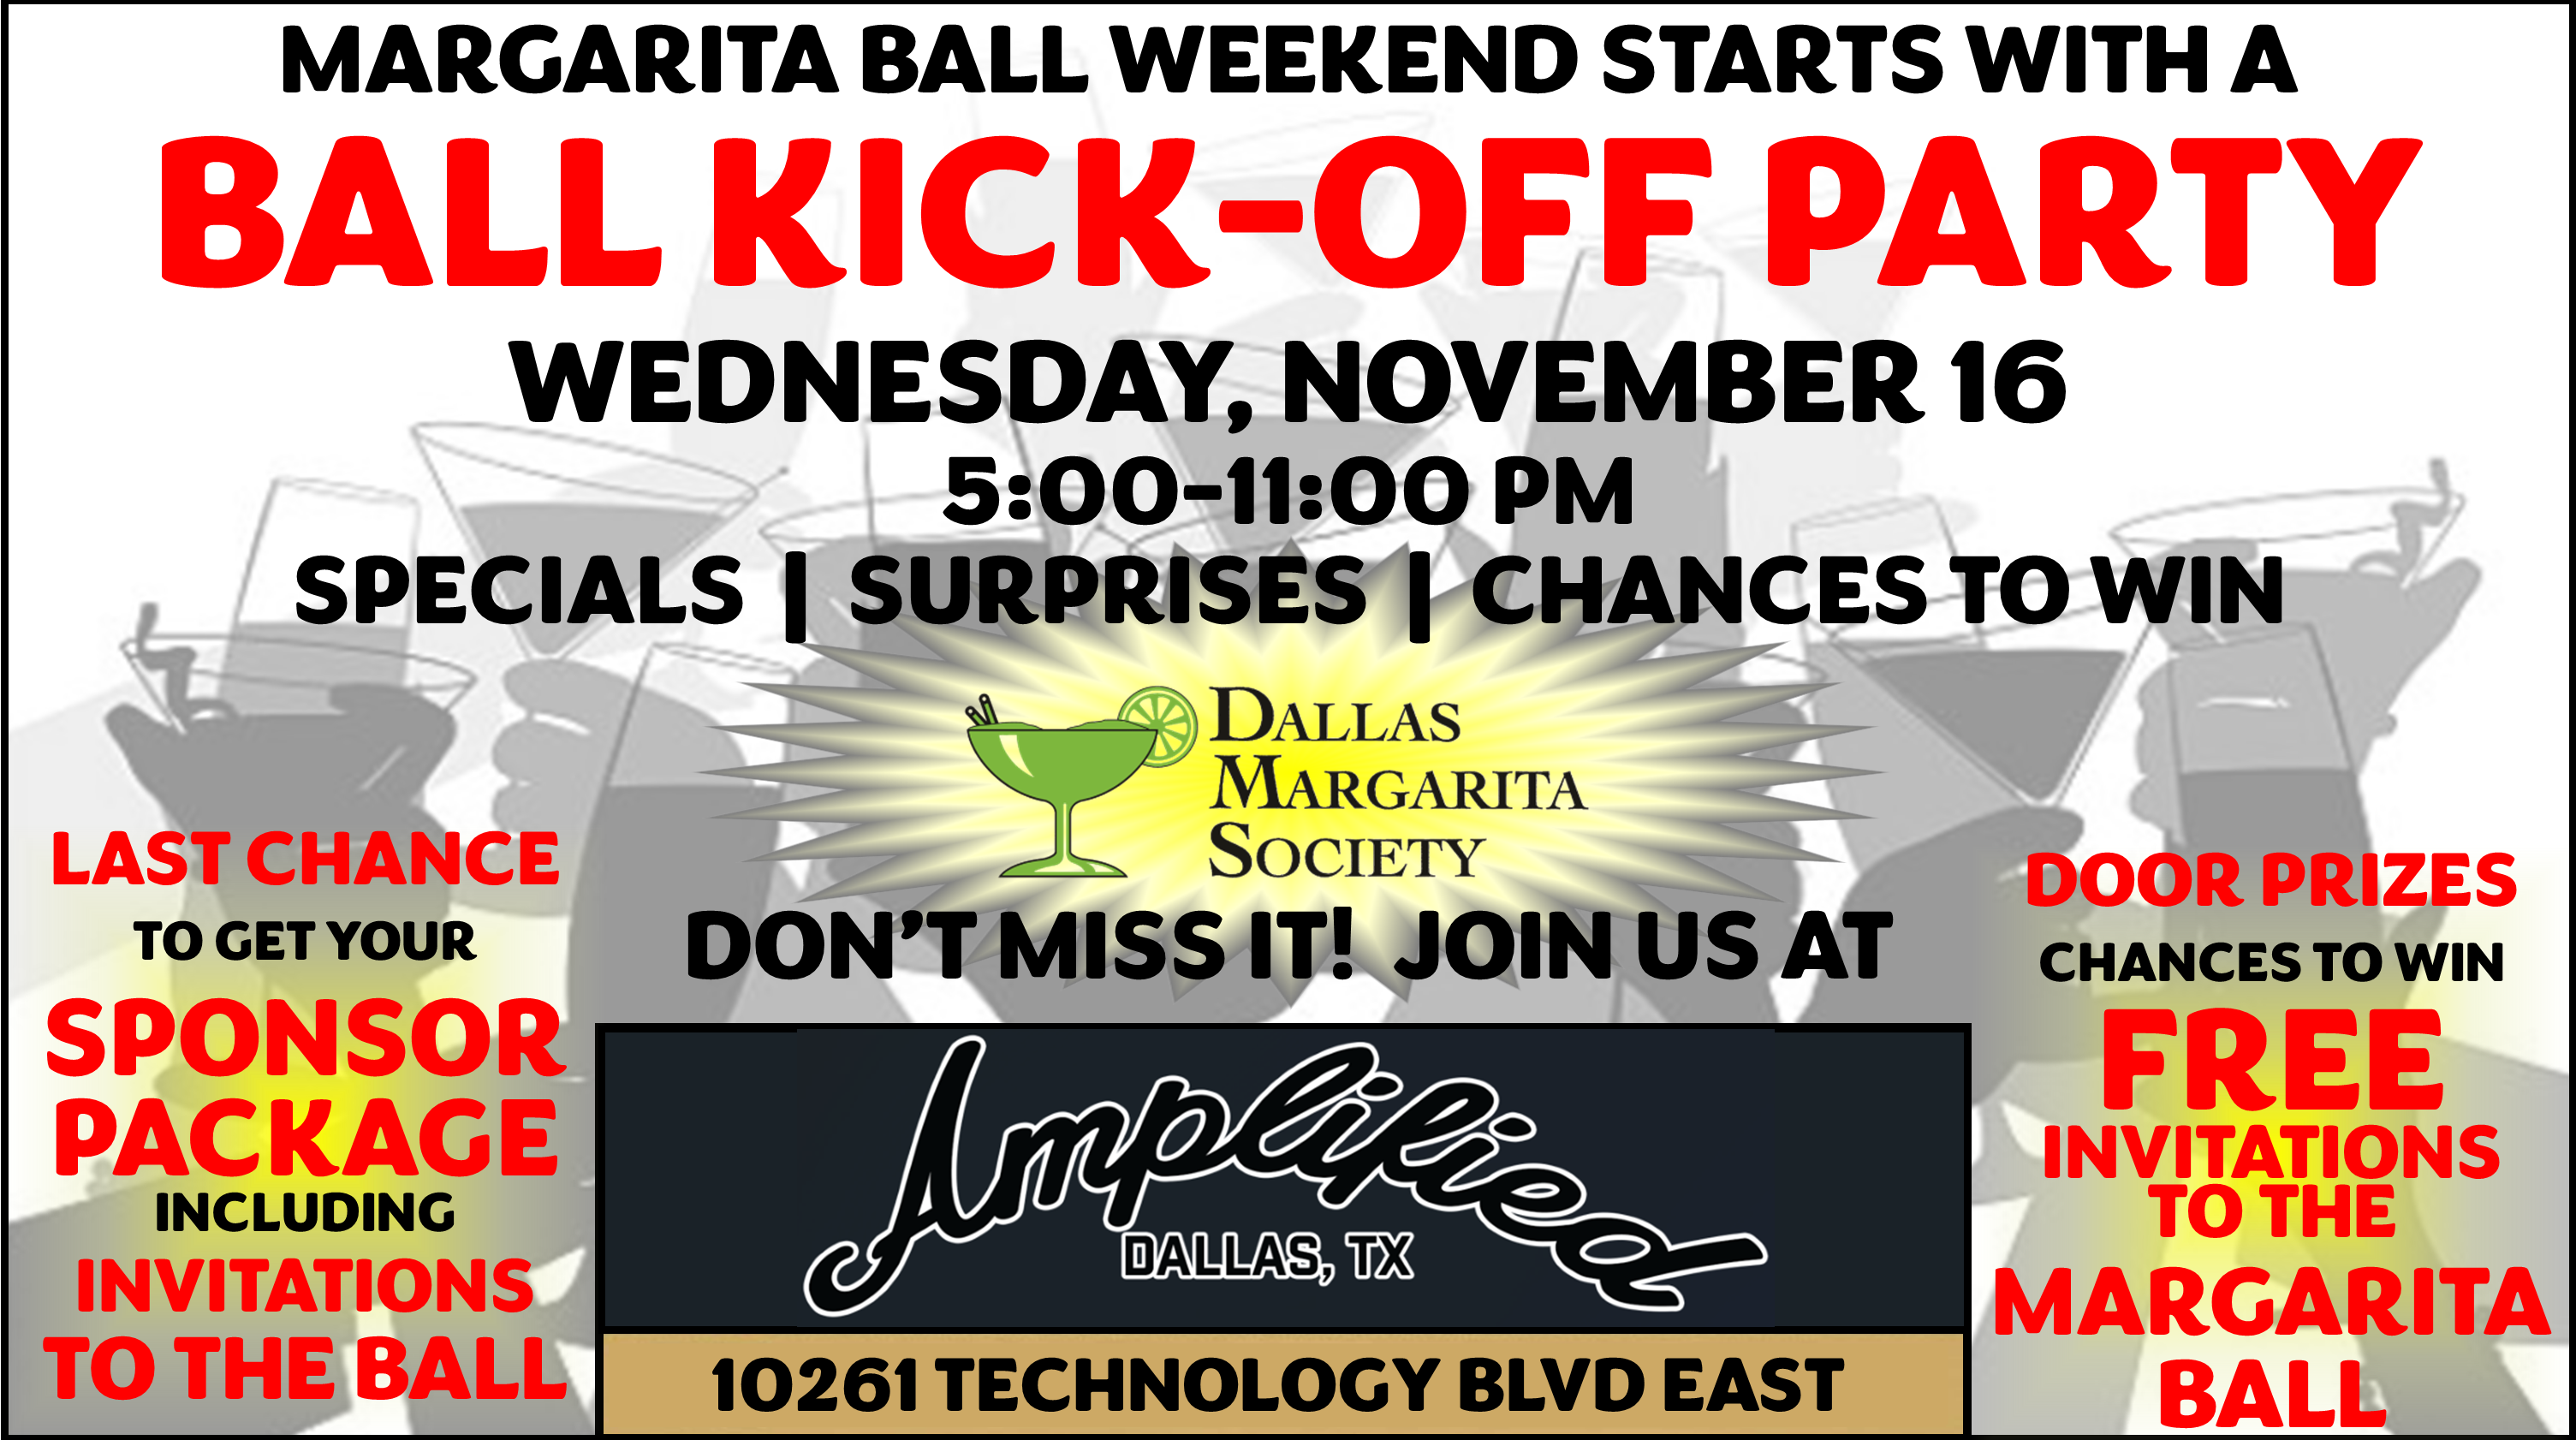 Dallas Margarita Society Ball KickOff Party Dallas Margarita Society